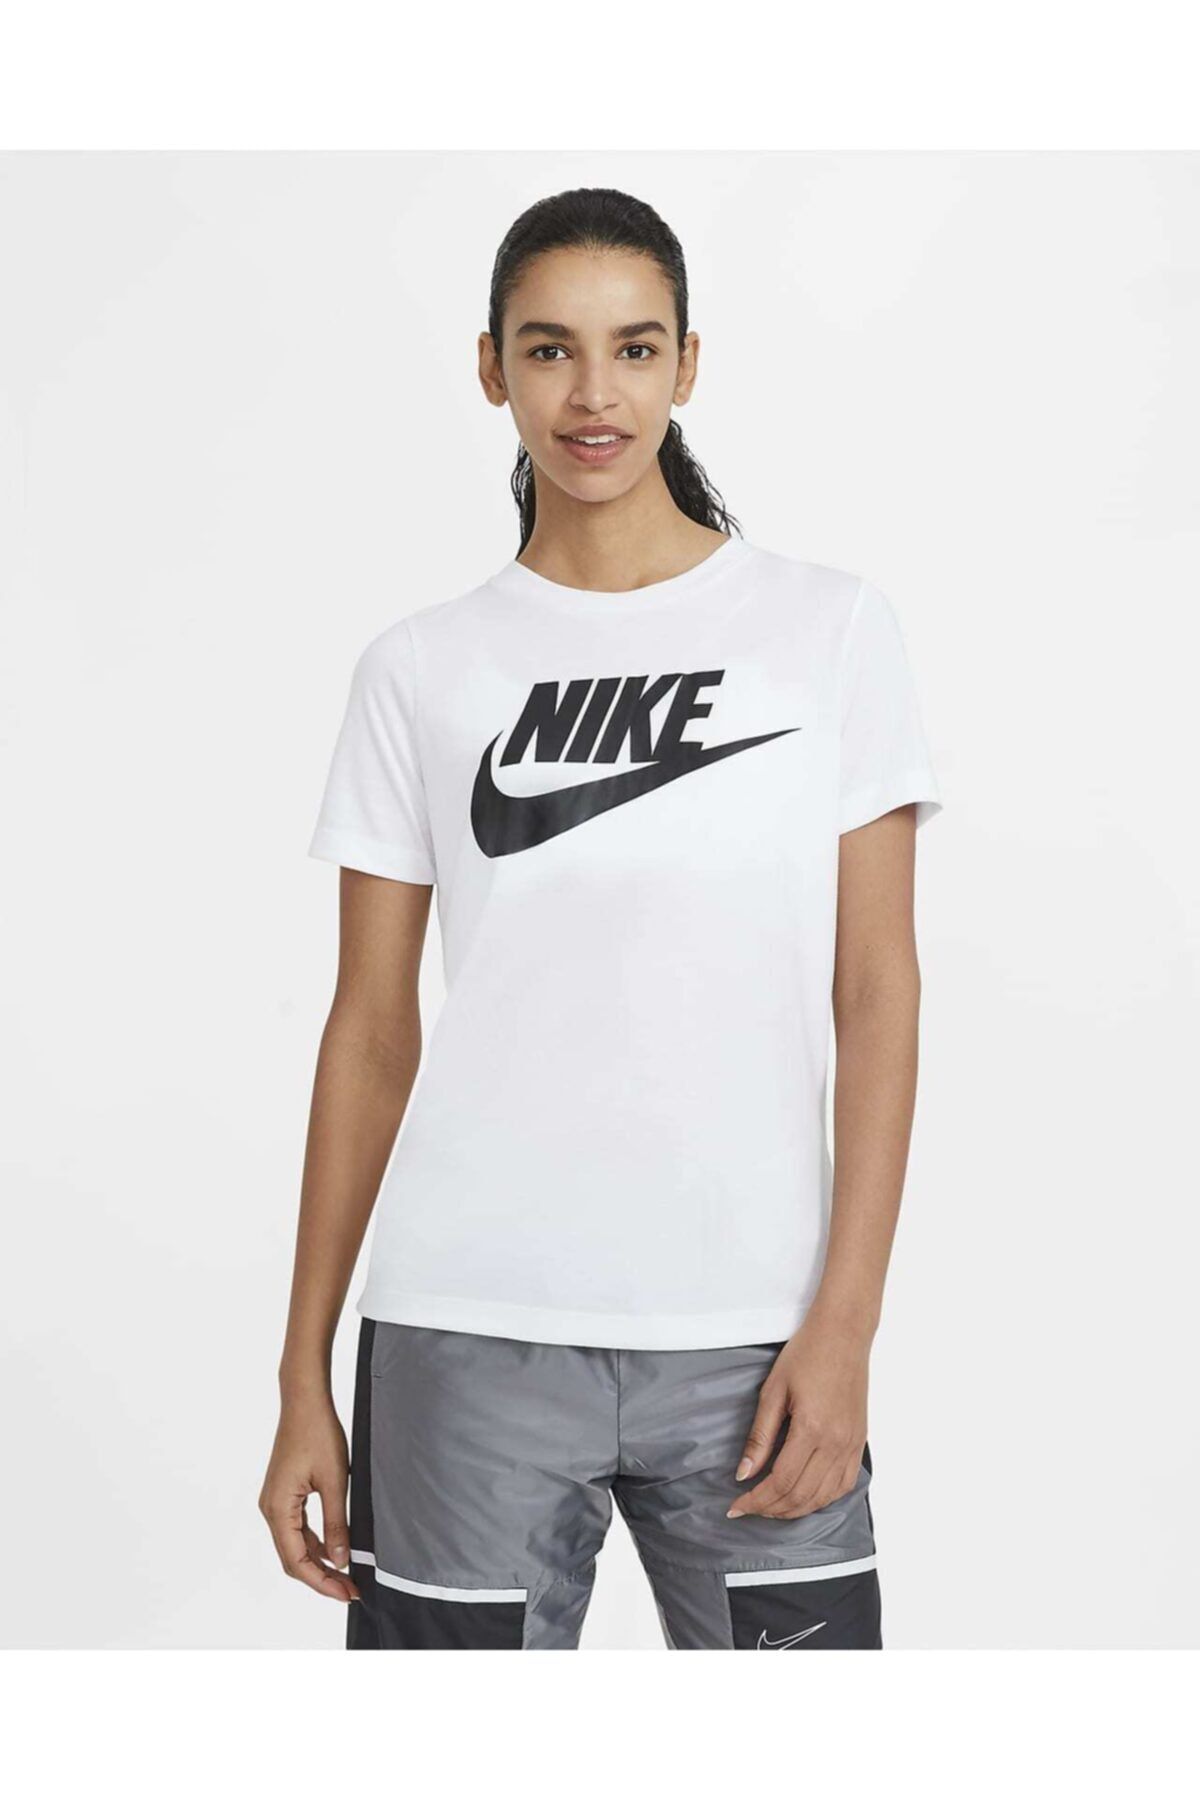 Nike Nıke Nsw Essentıal Women's T-shırt Kadın Tişört At5464-100